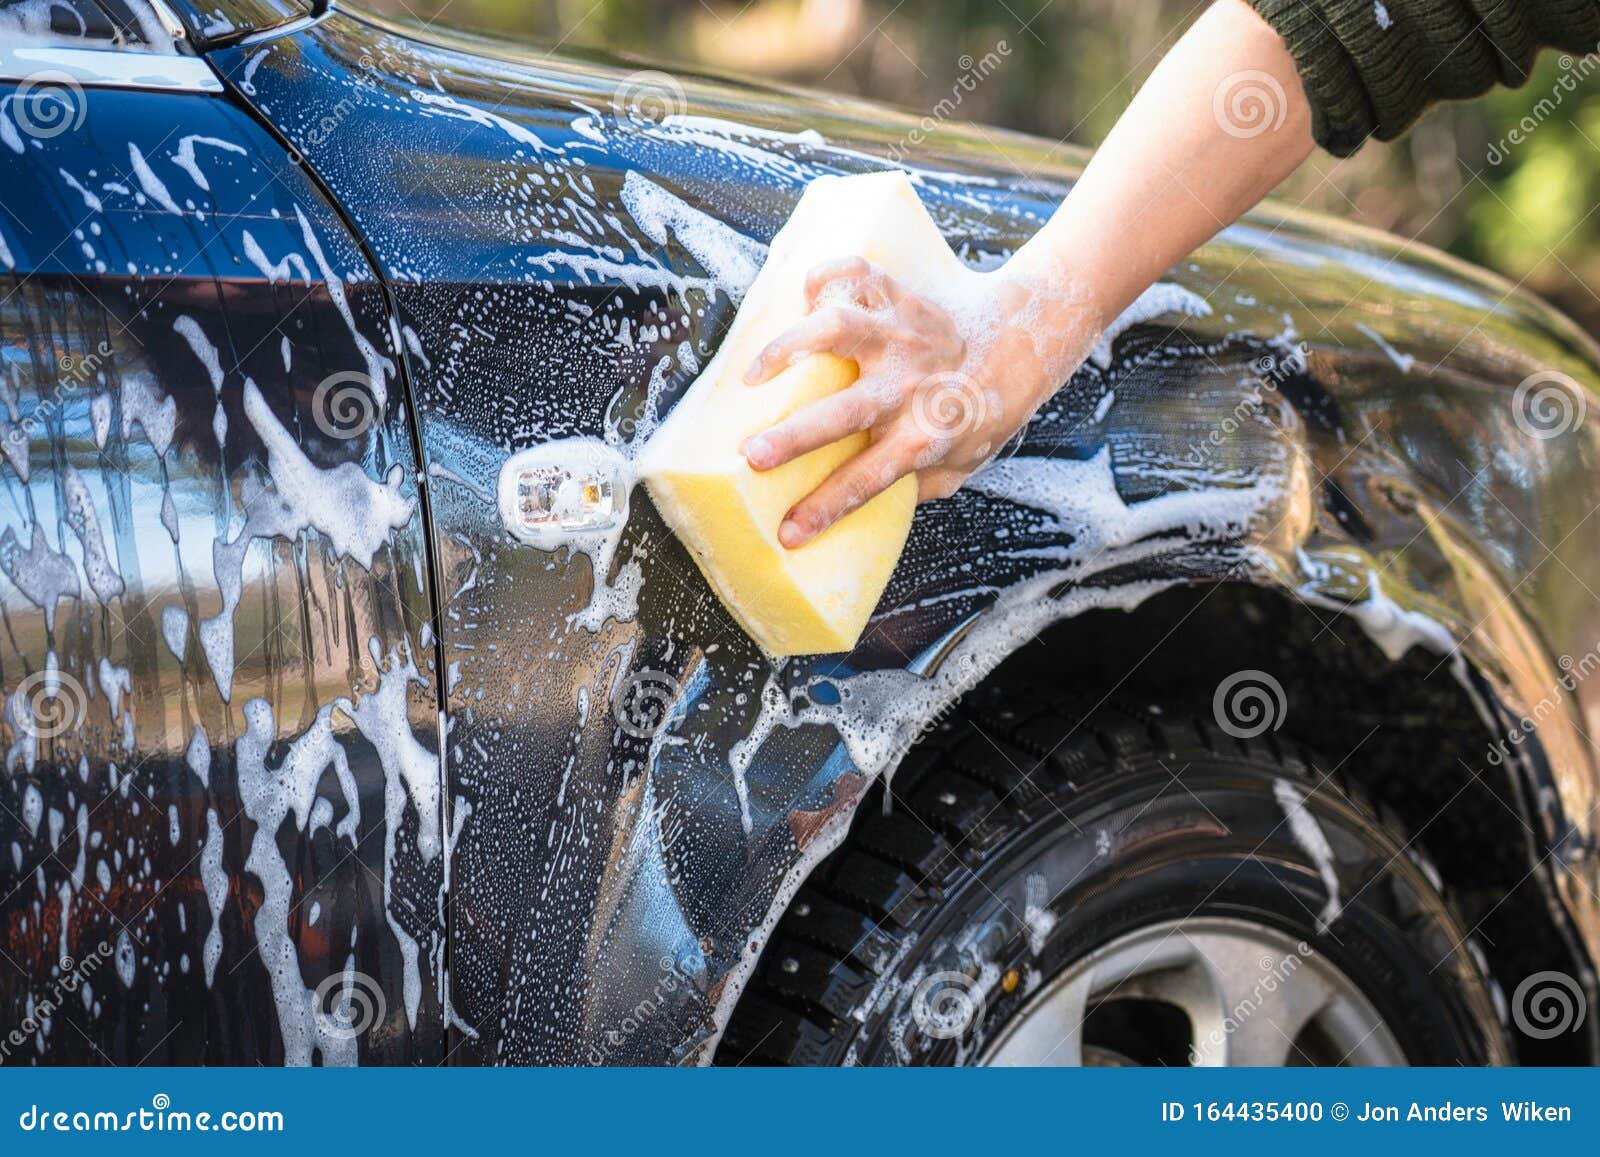 Как правильно мыть бесконтактной мойкой. Губка для мойки автомобиля. Мытье машины. Губка для мытья машины. Двухфазная мойка автомобиля.